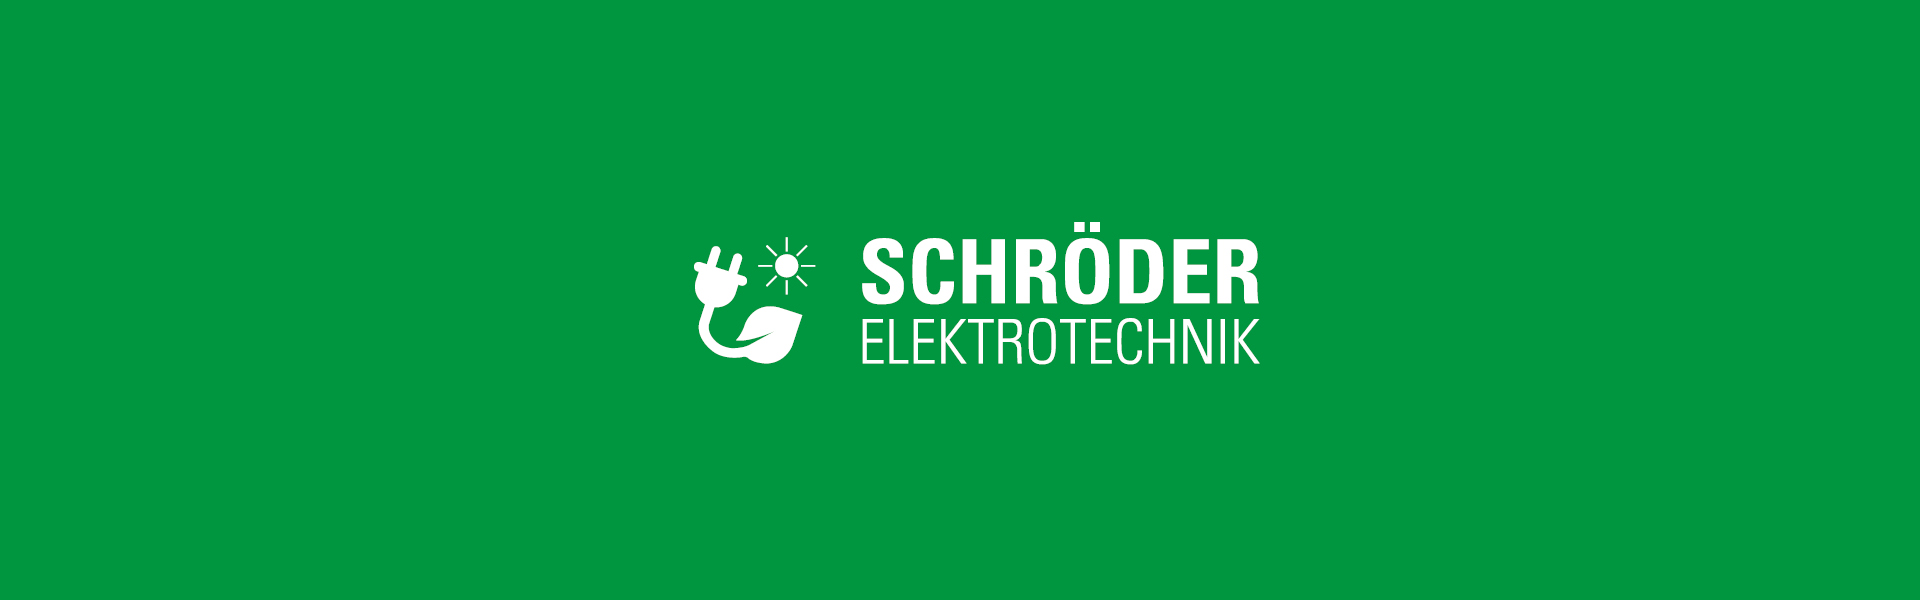 Schröder Elektrotechnik - Titelbild